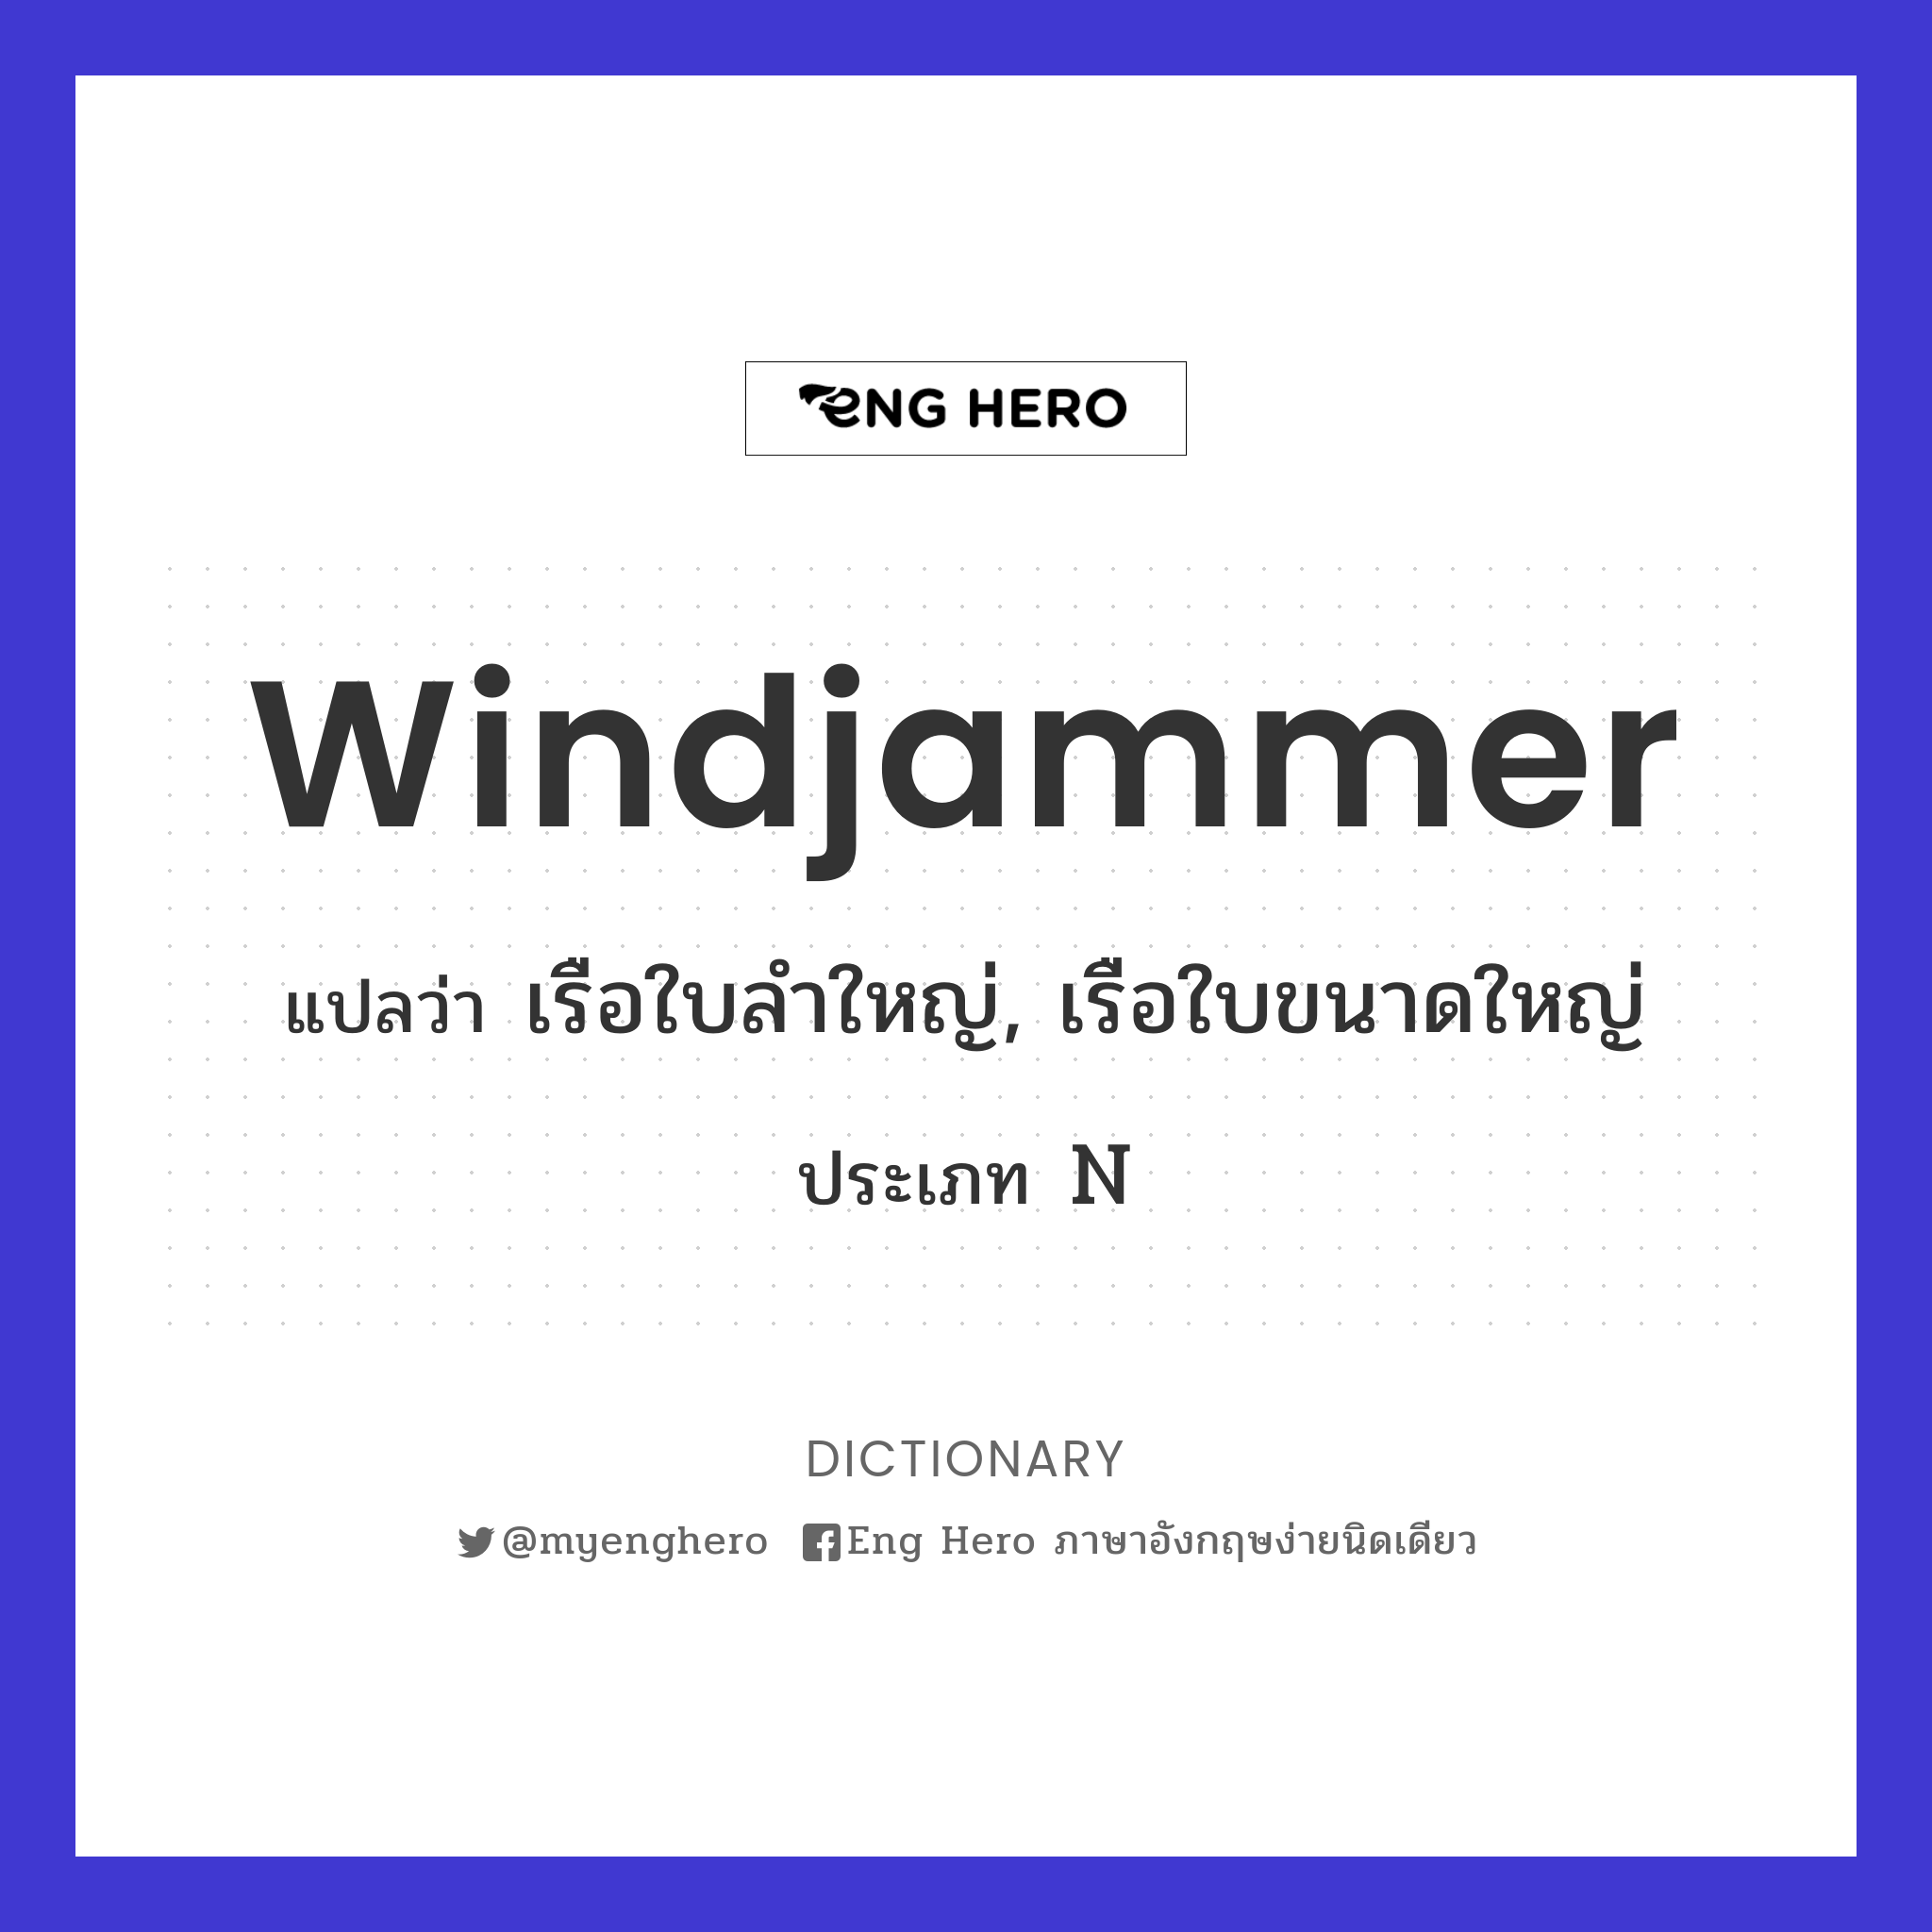 windjammer